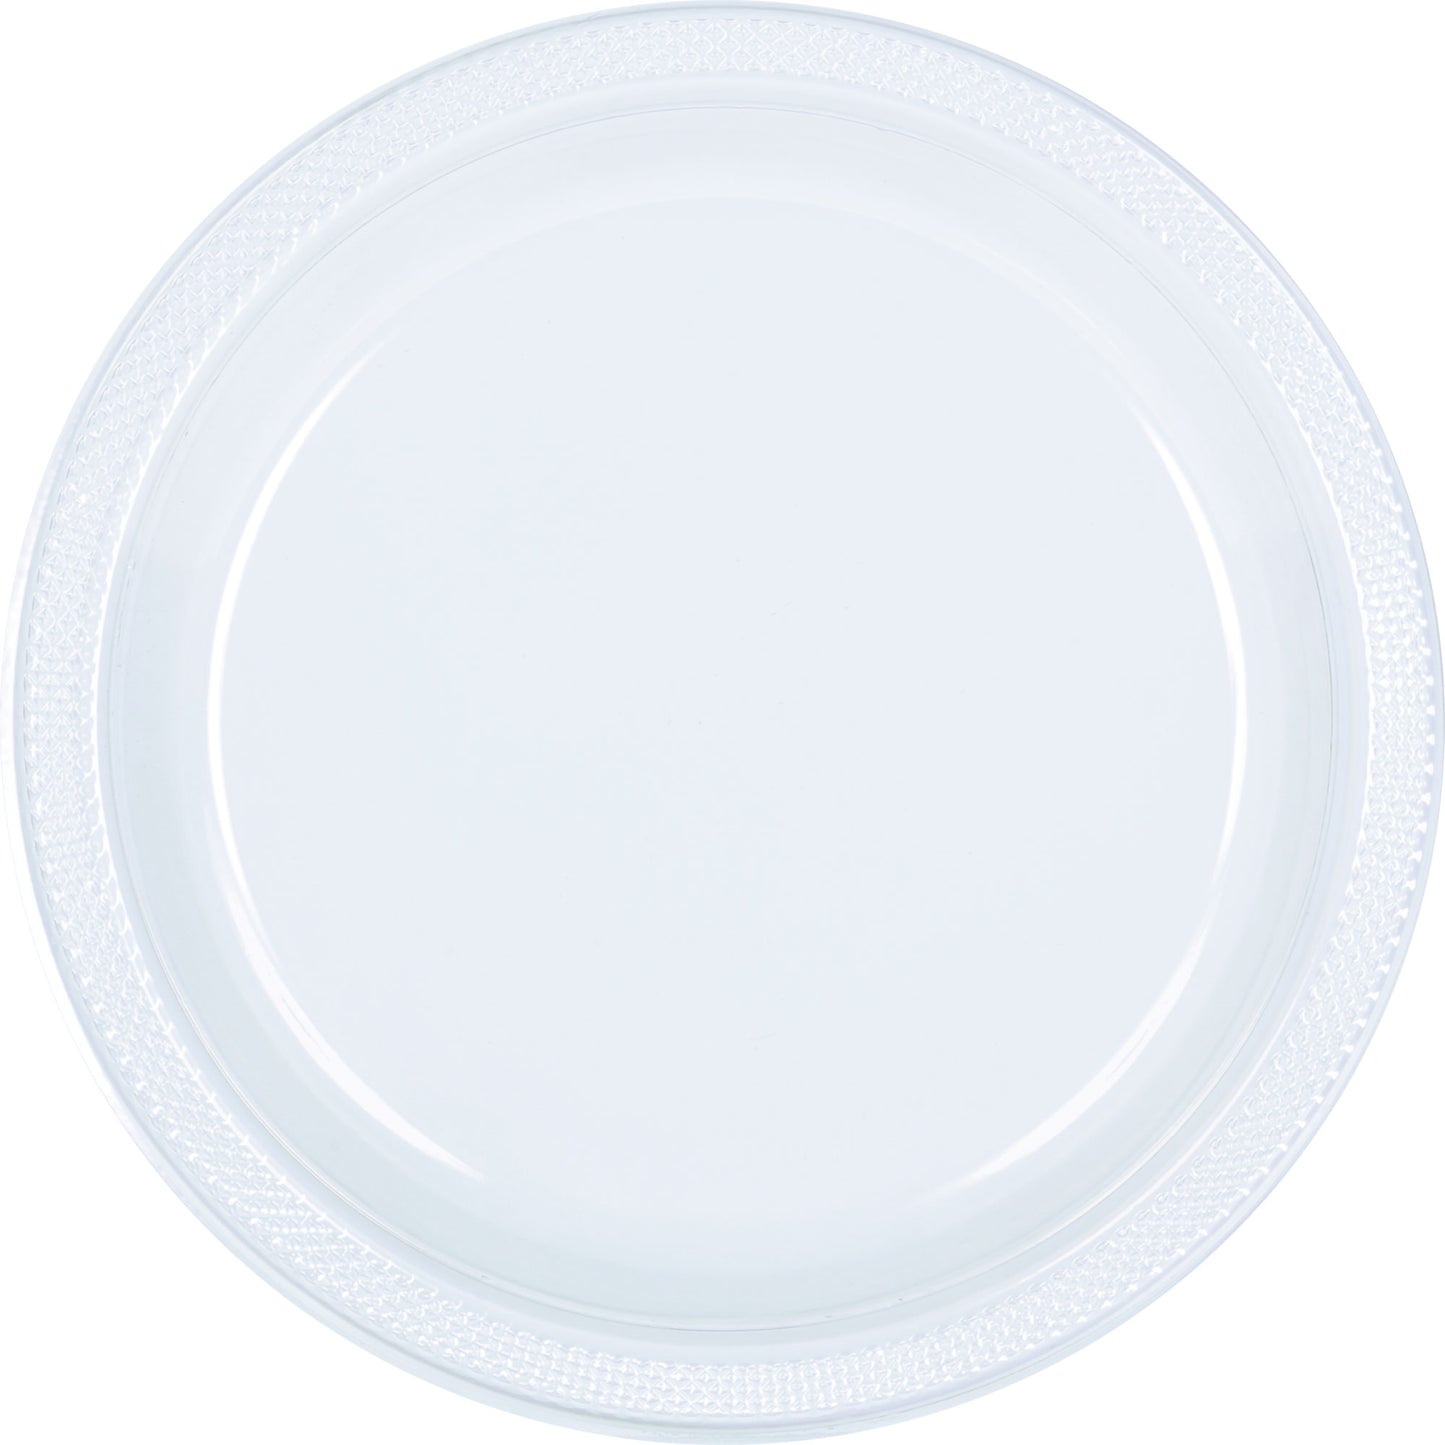 Premium Plastic Plates 26cm 20 Pack - Clear